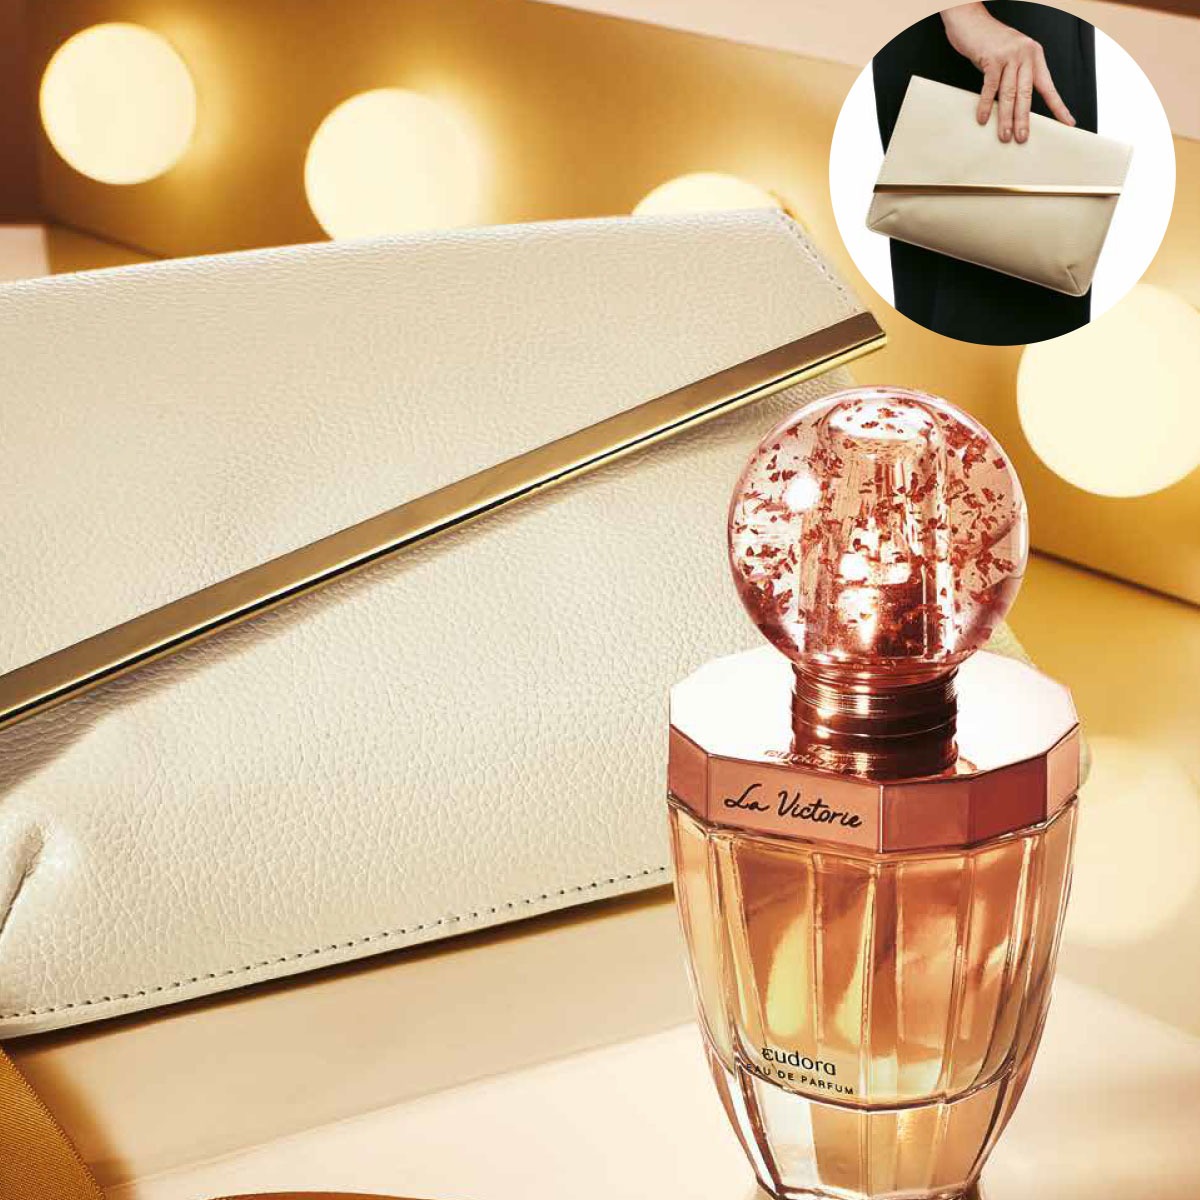 Estojo La Victorie: Eau de Parfum 75ml + Bolsa de Mão Clássica  - Shine Shop Perfumes e Cosméticos